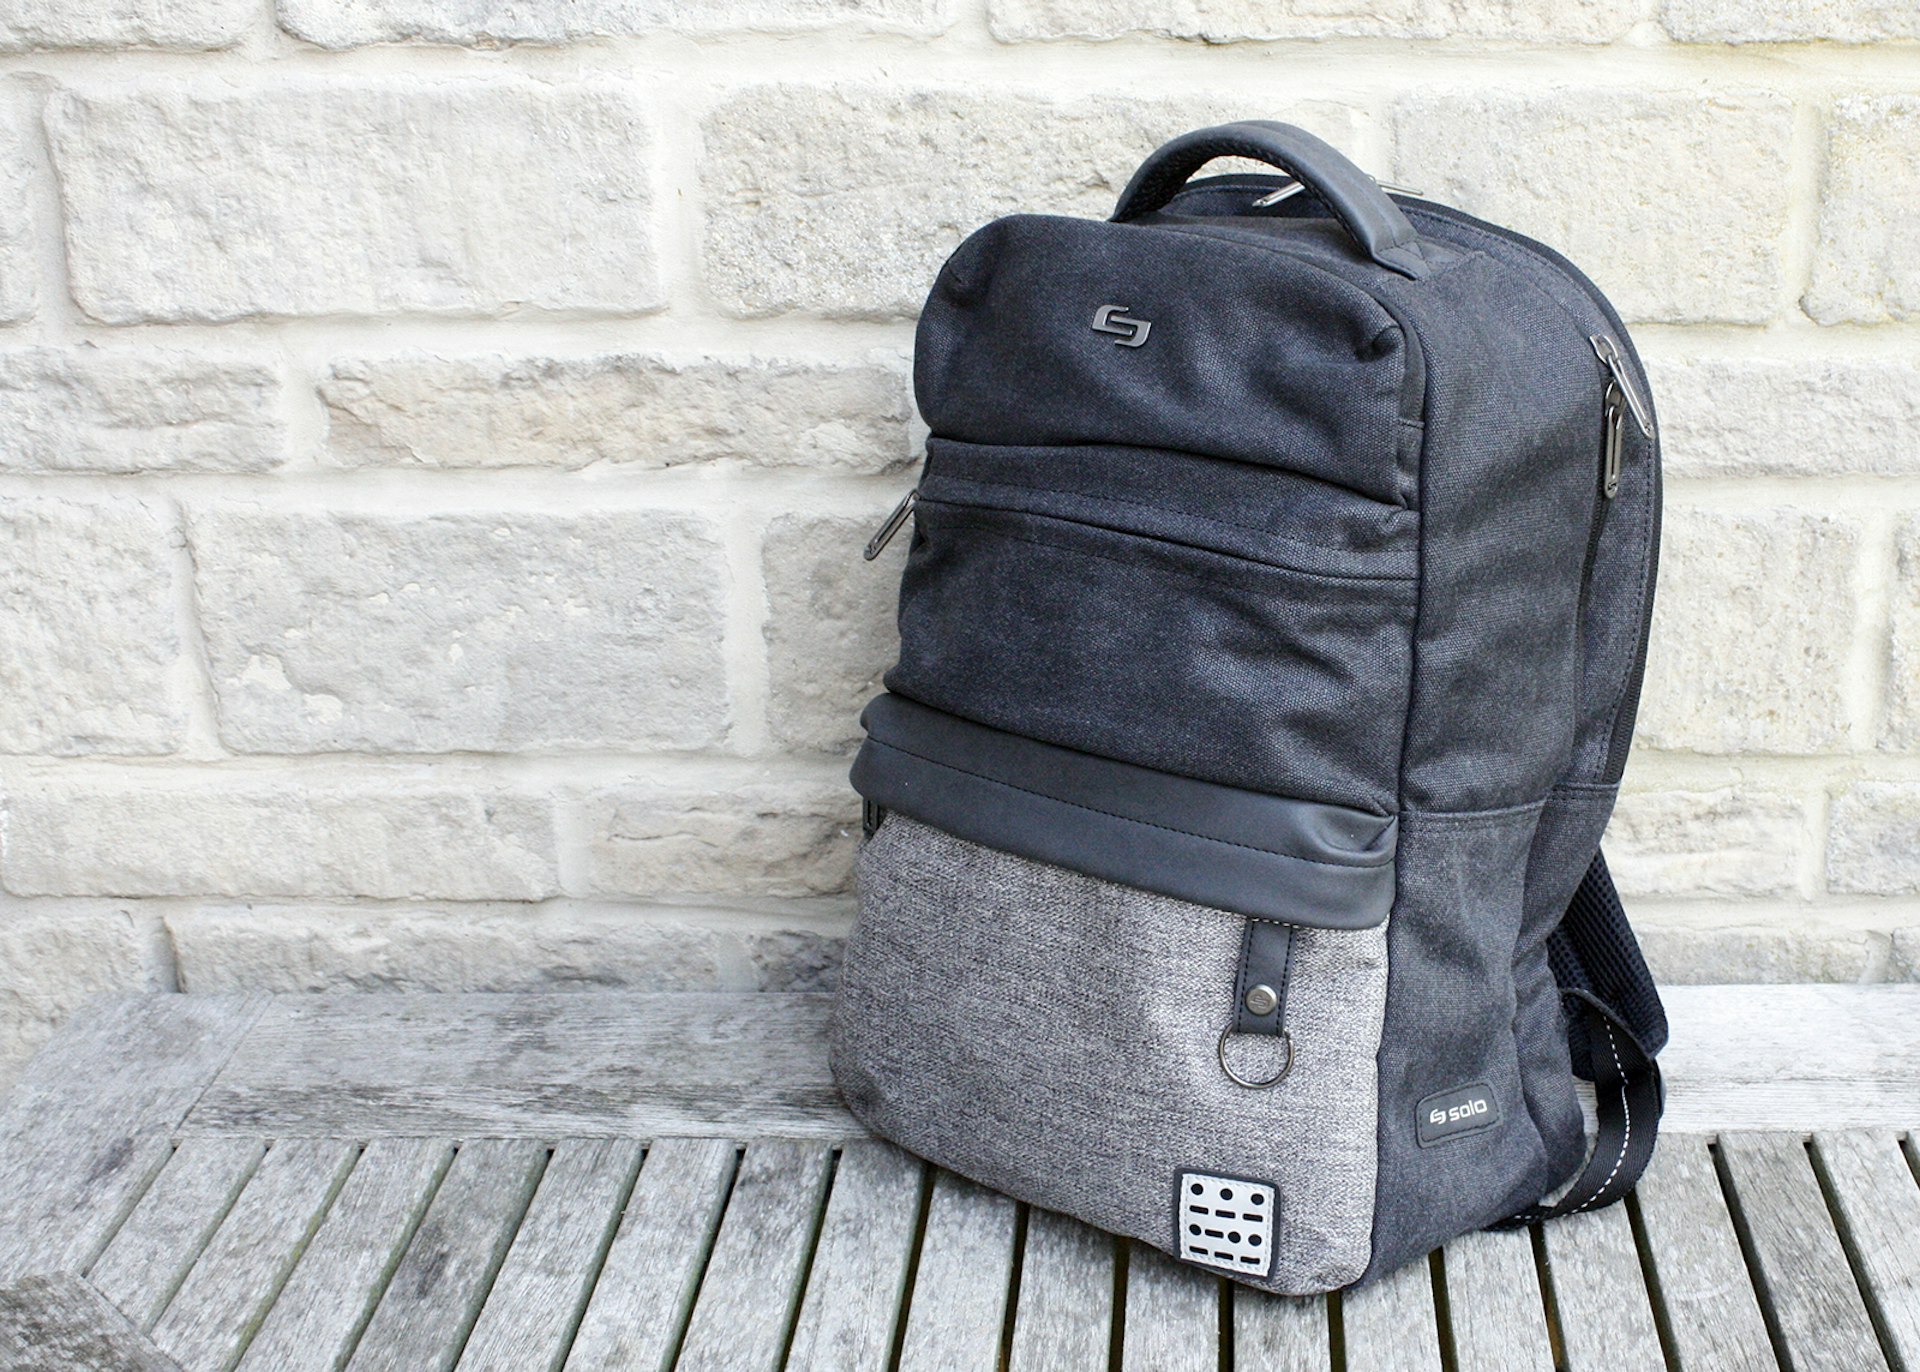 Solo Endeavor backpack © David Else / Lonely Planet